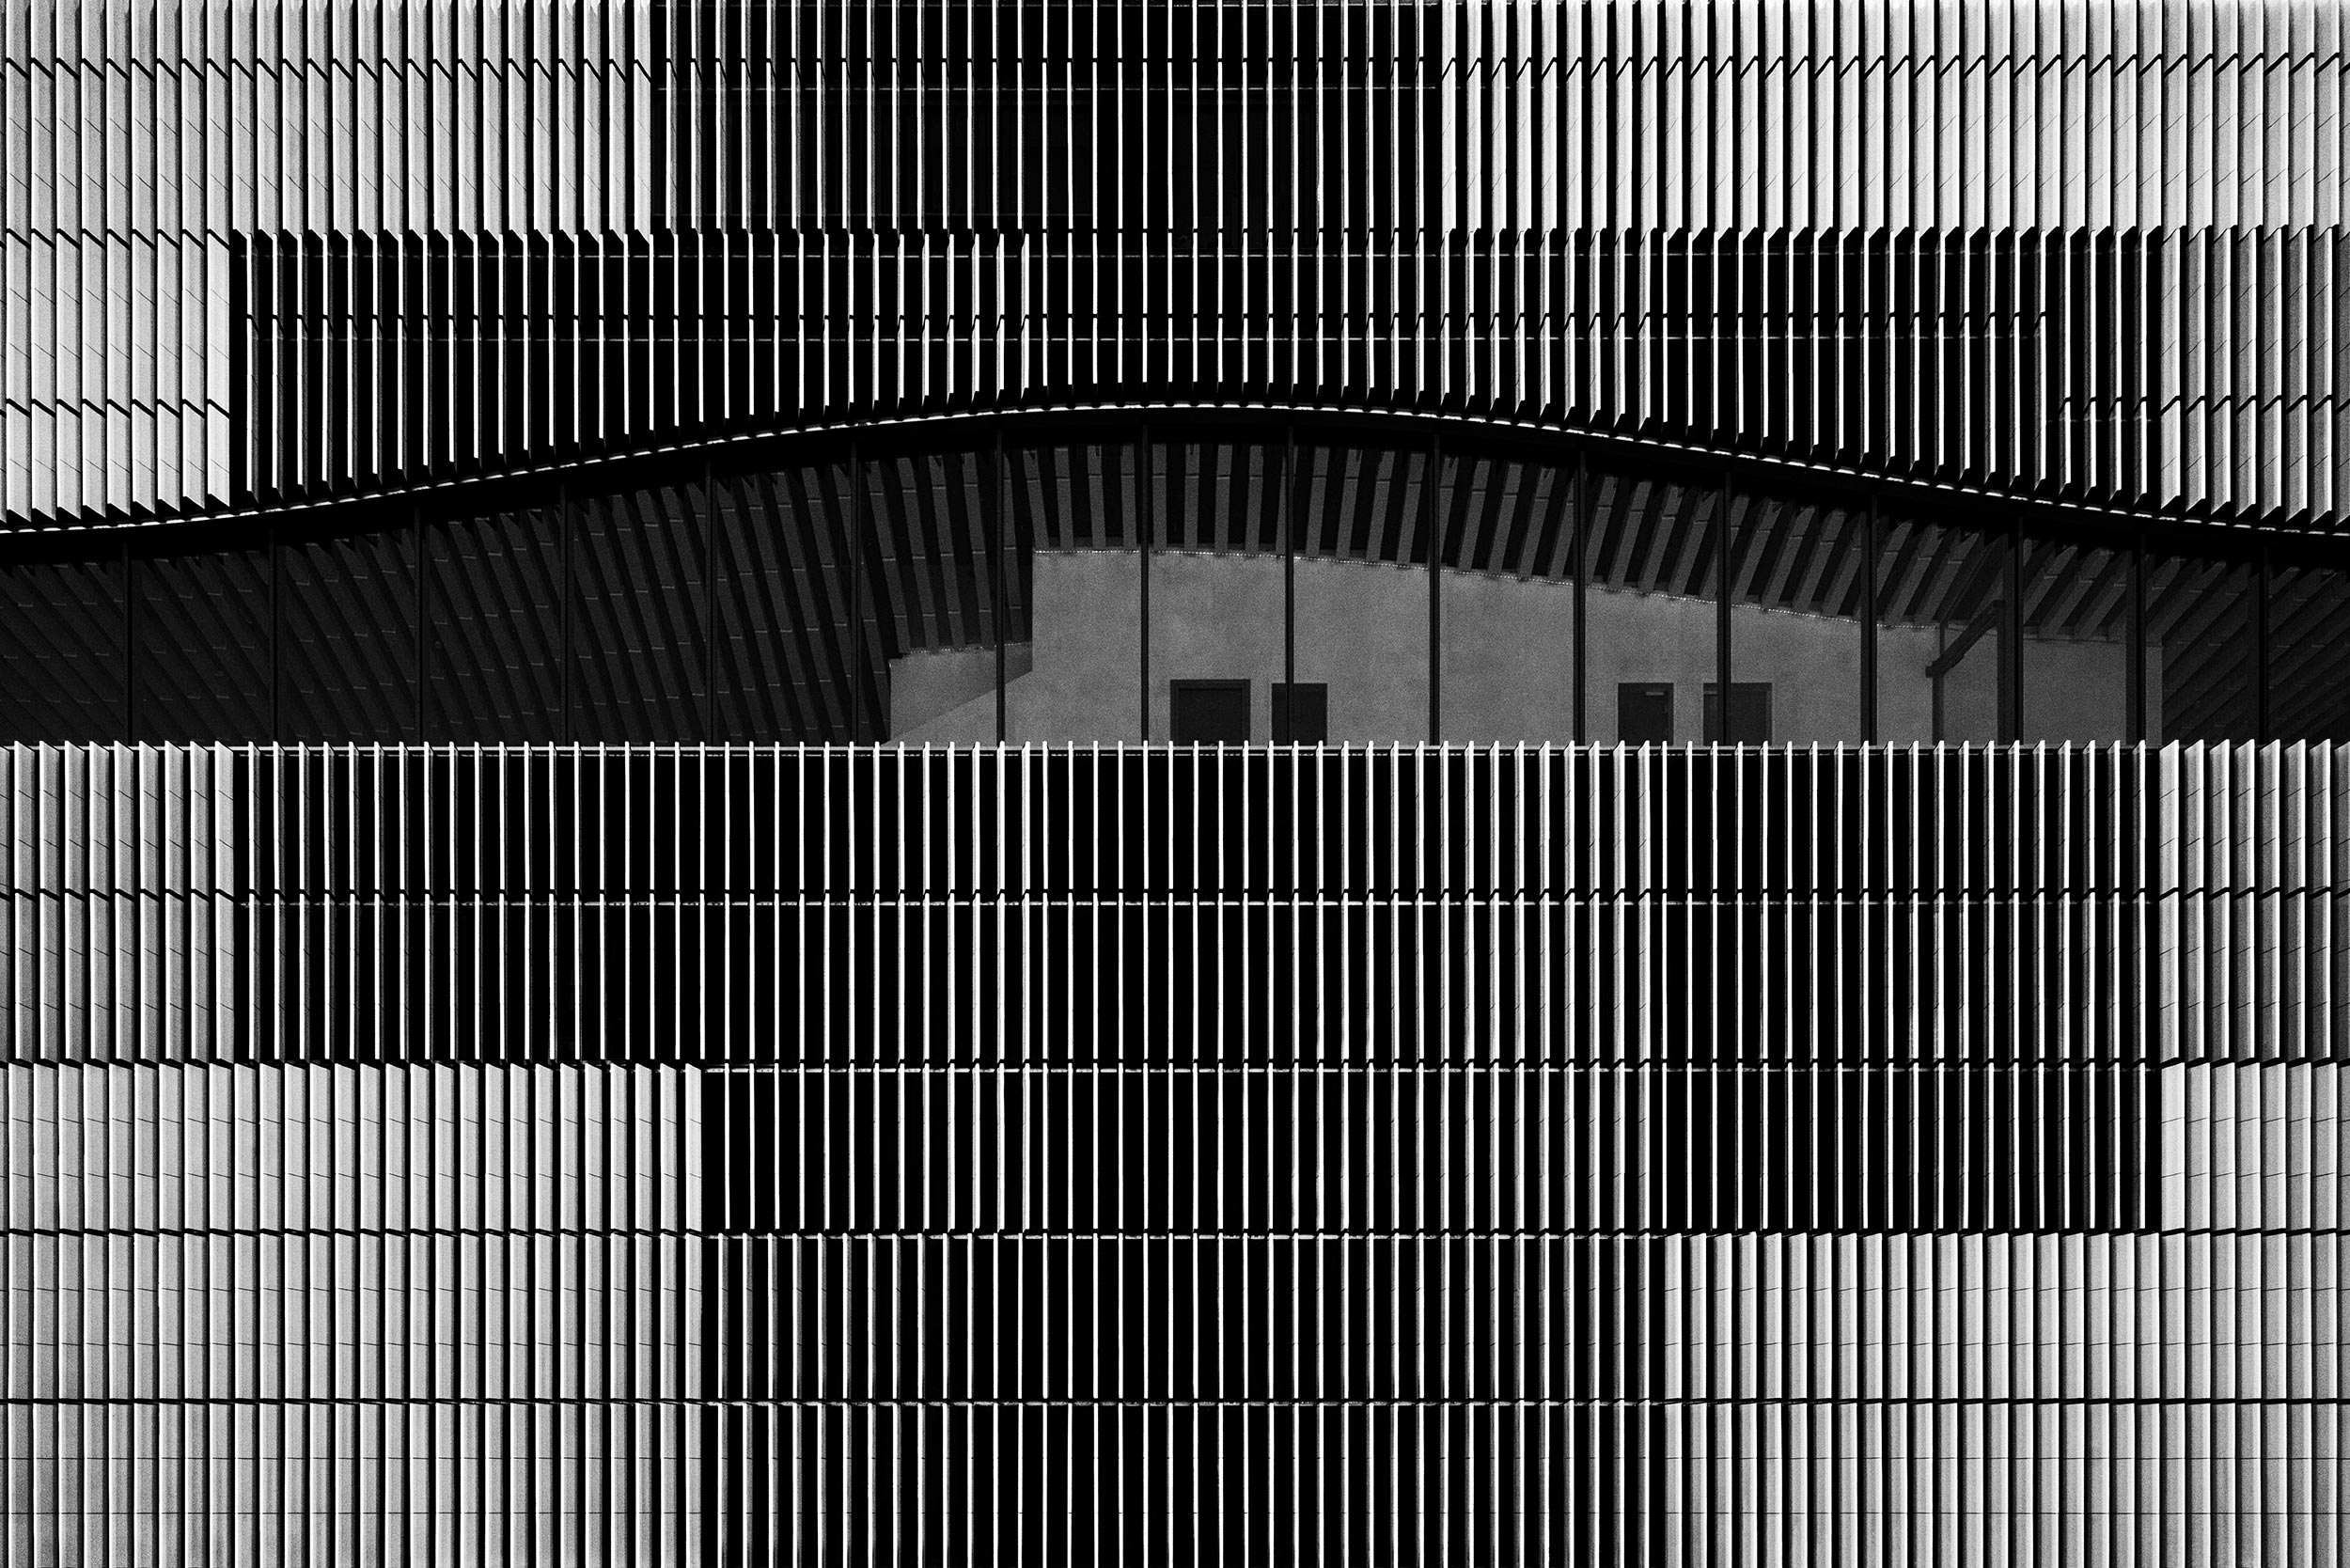 Paracelsus-Bad, Salzburg - Berger + Parkkinen - Black & White Fine Art Architecture Photography